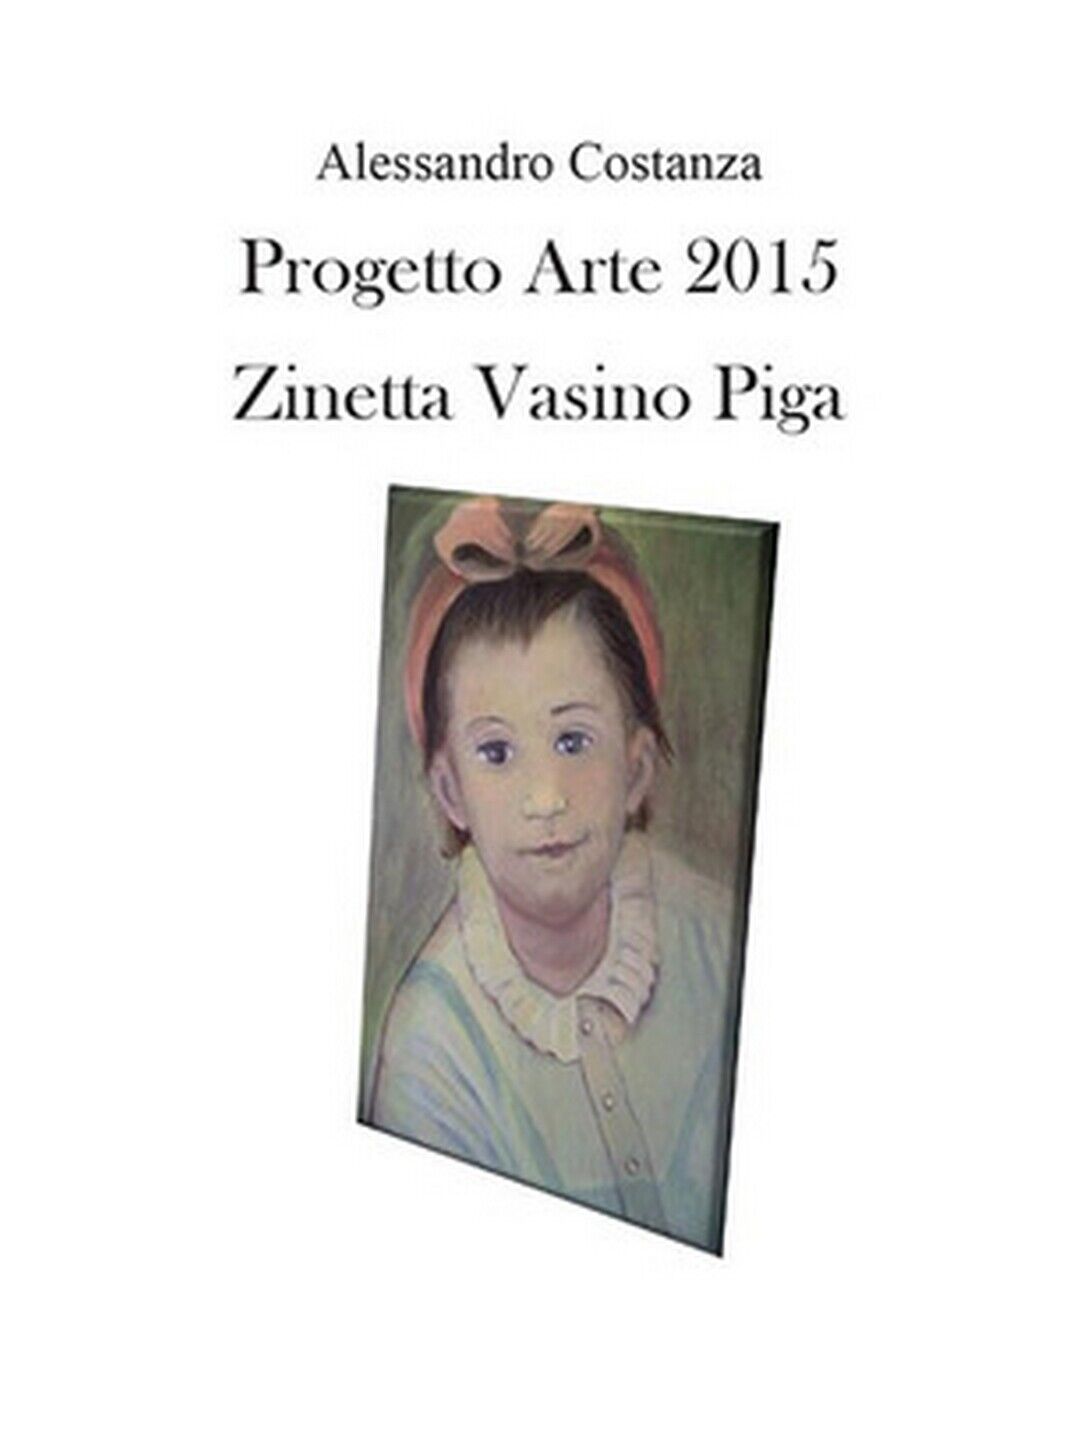 Progetto Arte 2015. Zinetta Vasino Piga , Alessandro Costanza,  2016,  Youcanpr.